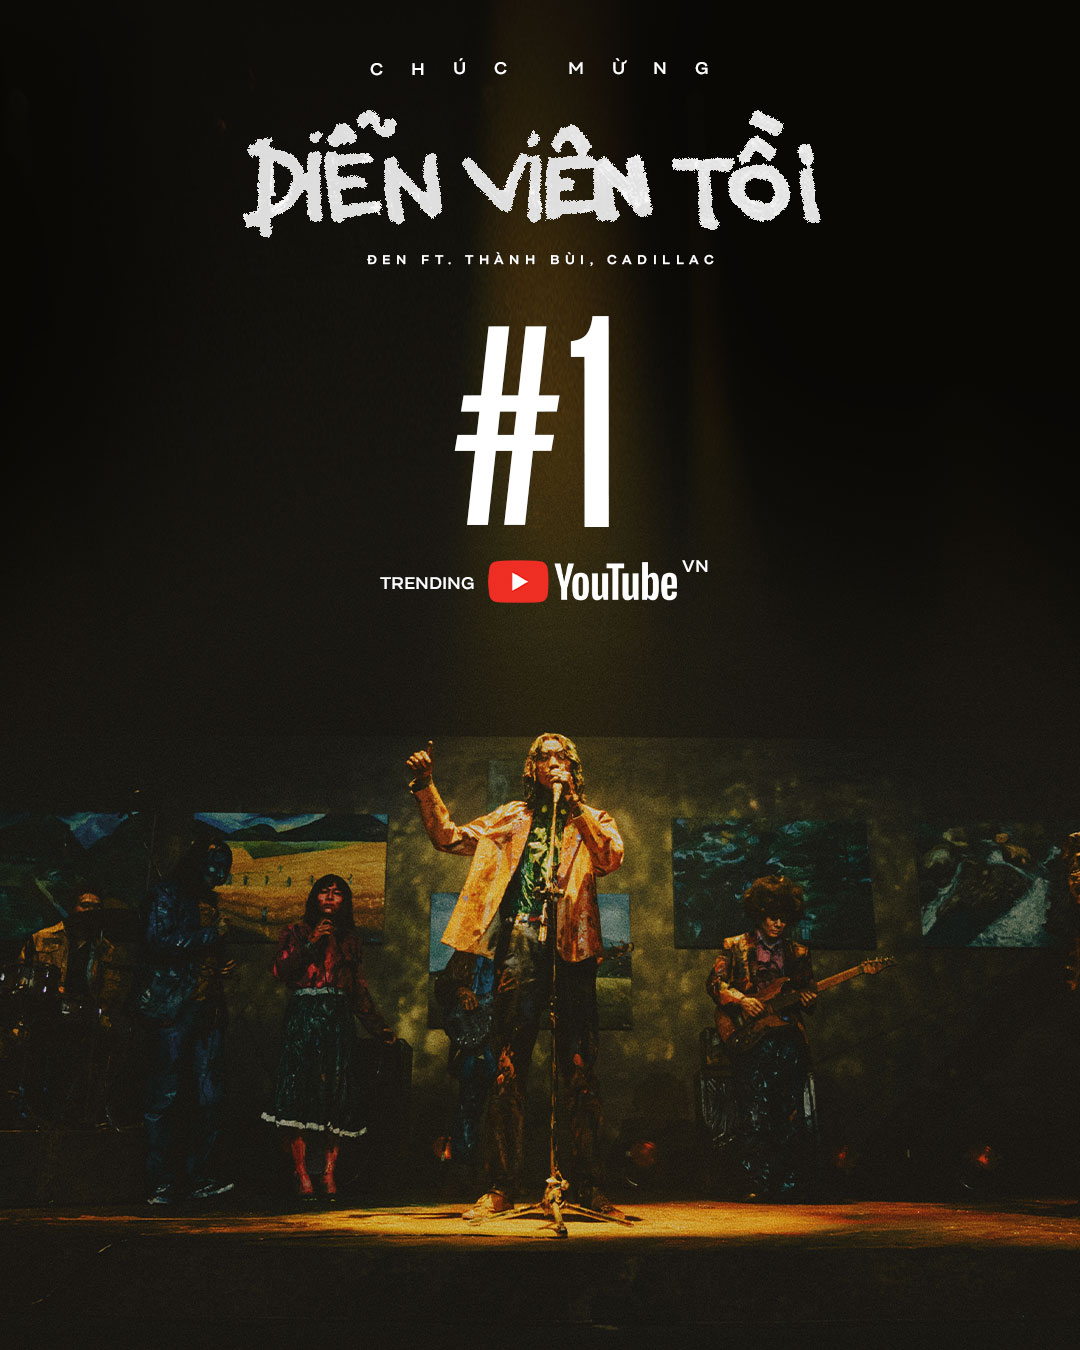 MV thứ 15: Sự kiện MV thứ 15 của nghệ sĩ nào đó đang là tin đồn nóng hổi nhất? Không cần phải tìm kiếm nữa vì hình ảnh liên quan đến chủ đề MV thứ 15 đang chờ đón bạn đó. Bạn sẽ được thưởng thức thành quả đáng khen ngợi của lực lượng âm nhạc hàng đầu Việt Nam.